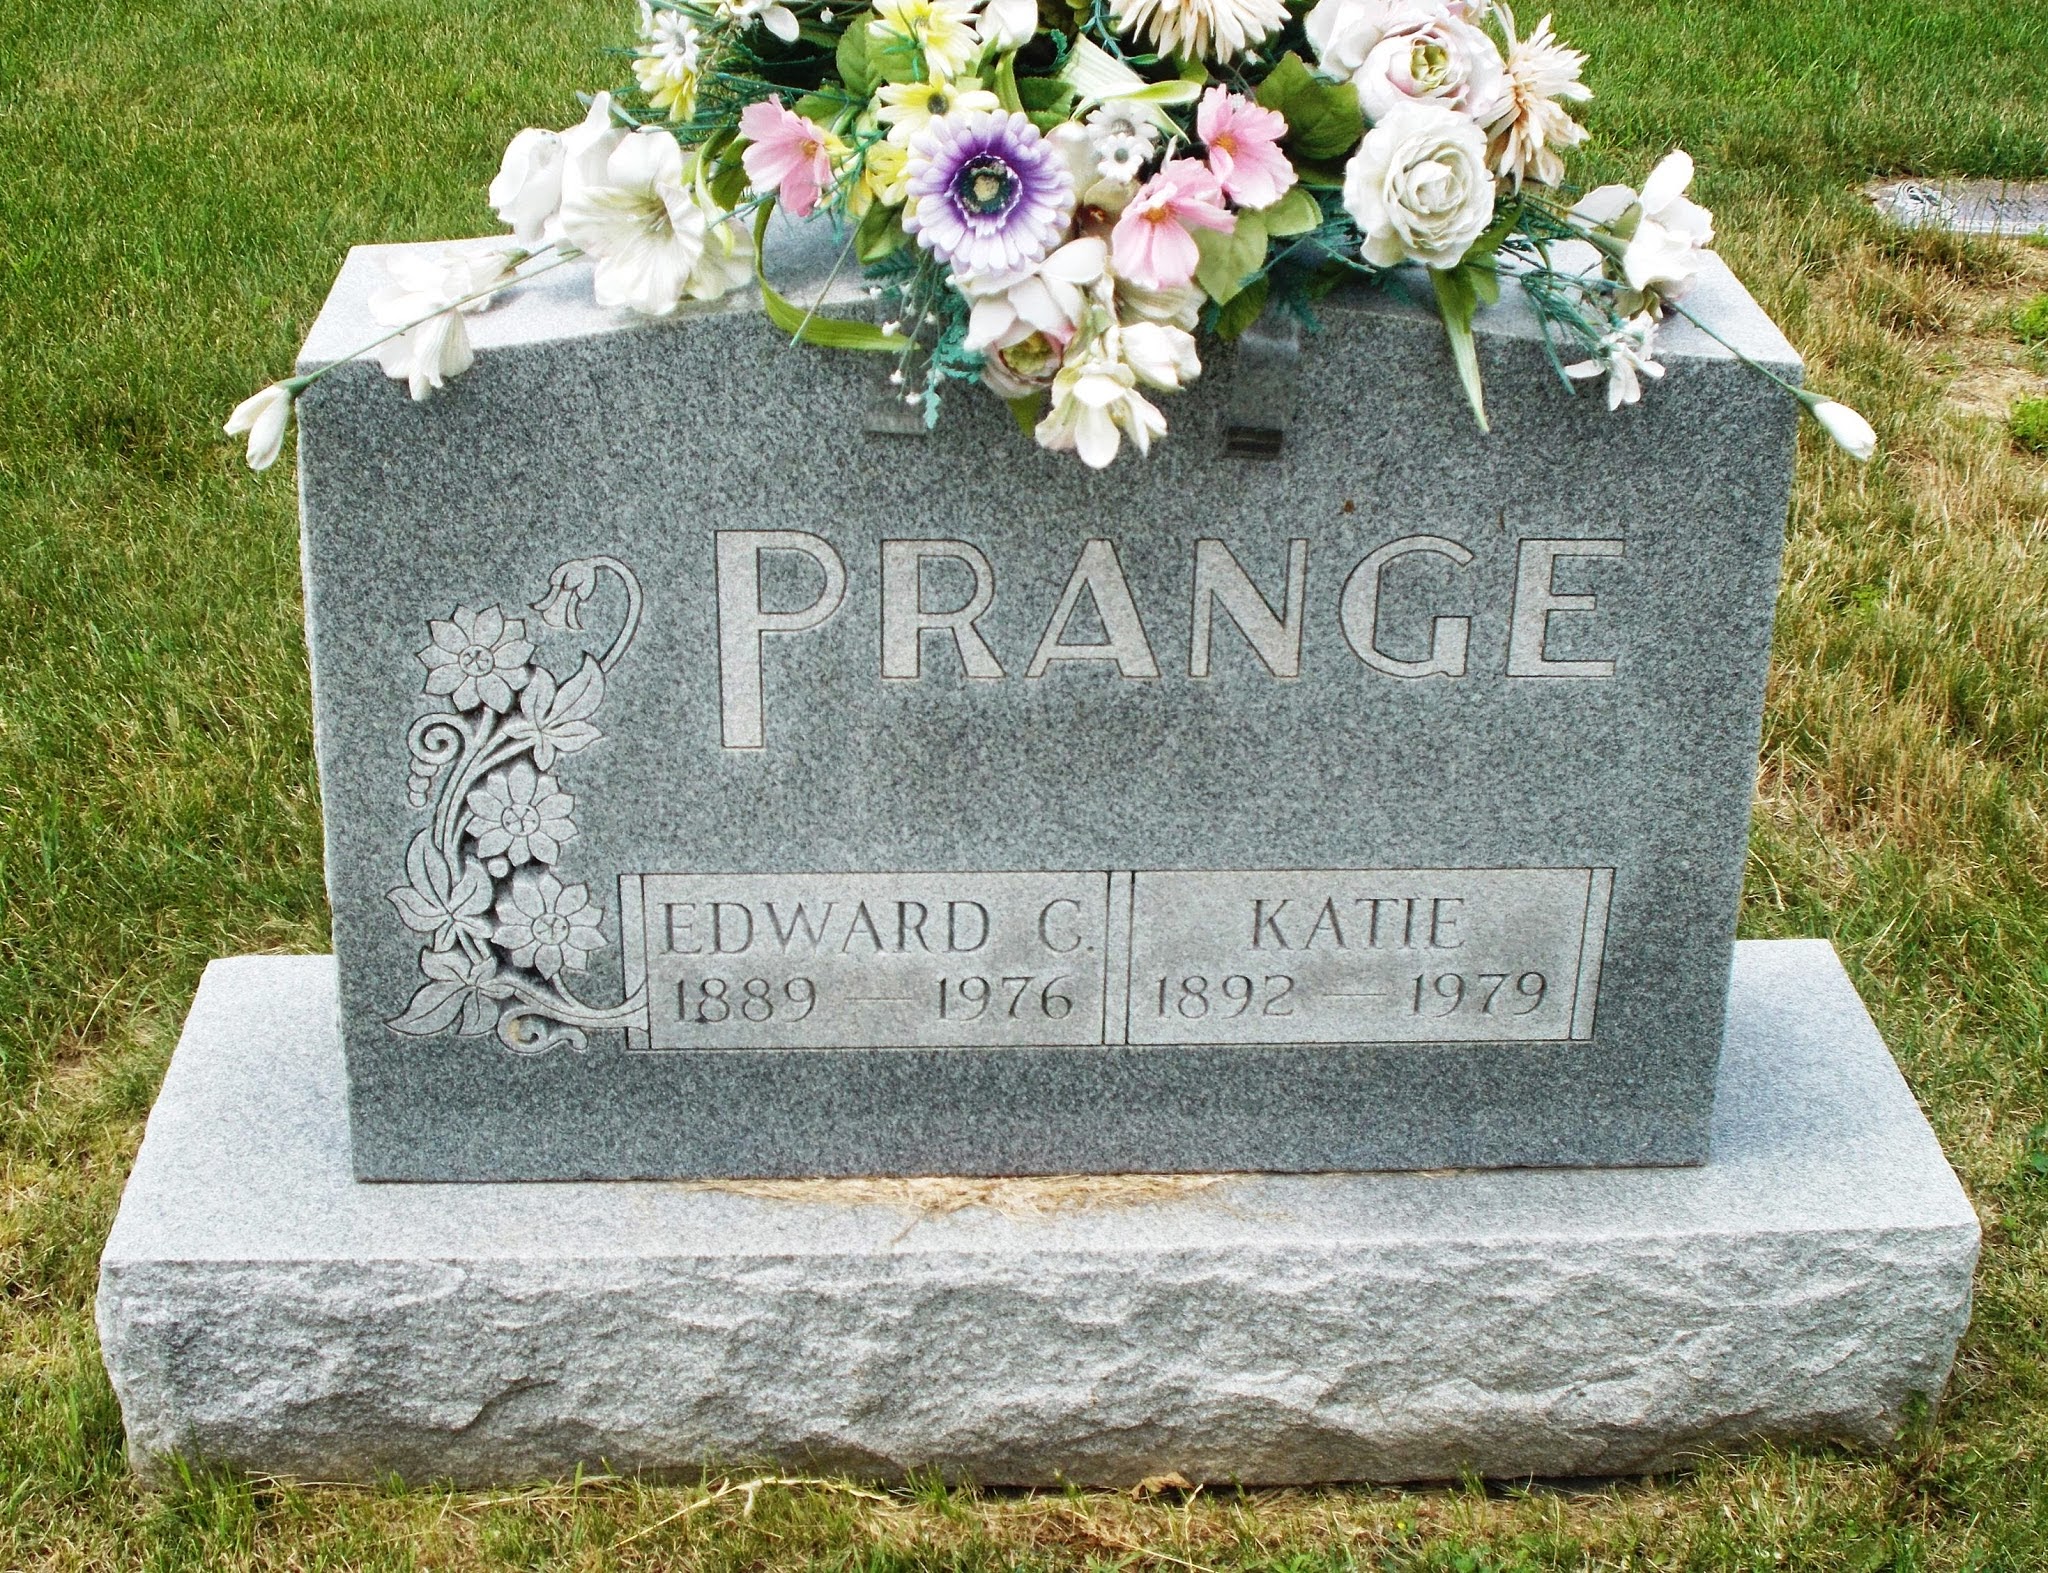 Edward G Prange